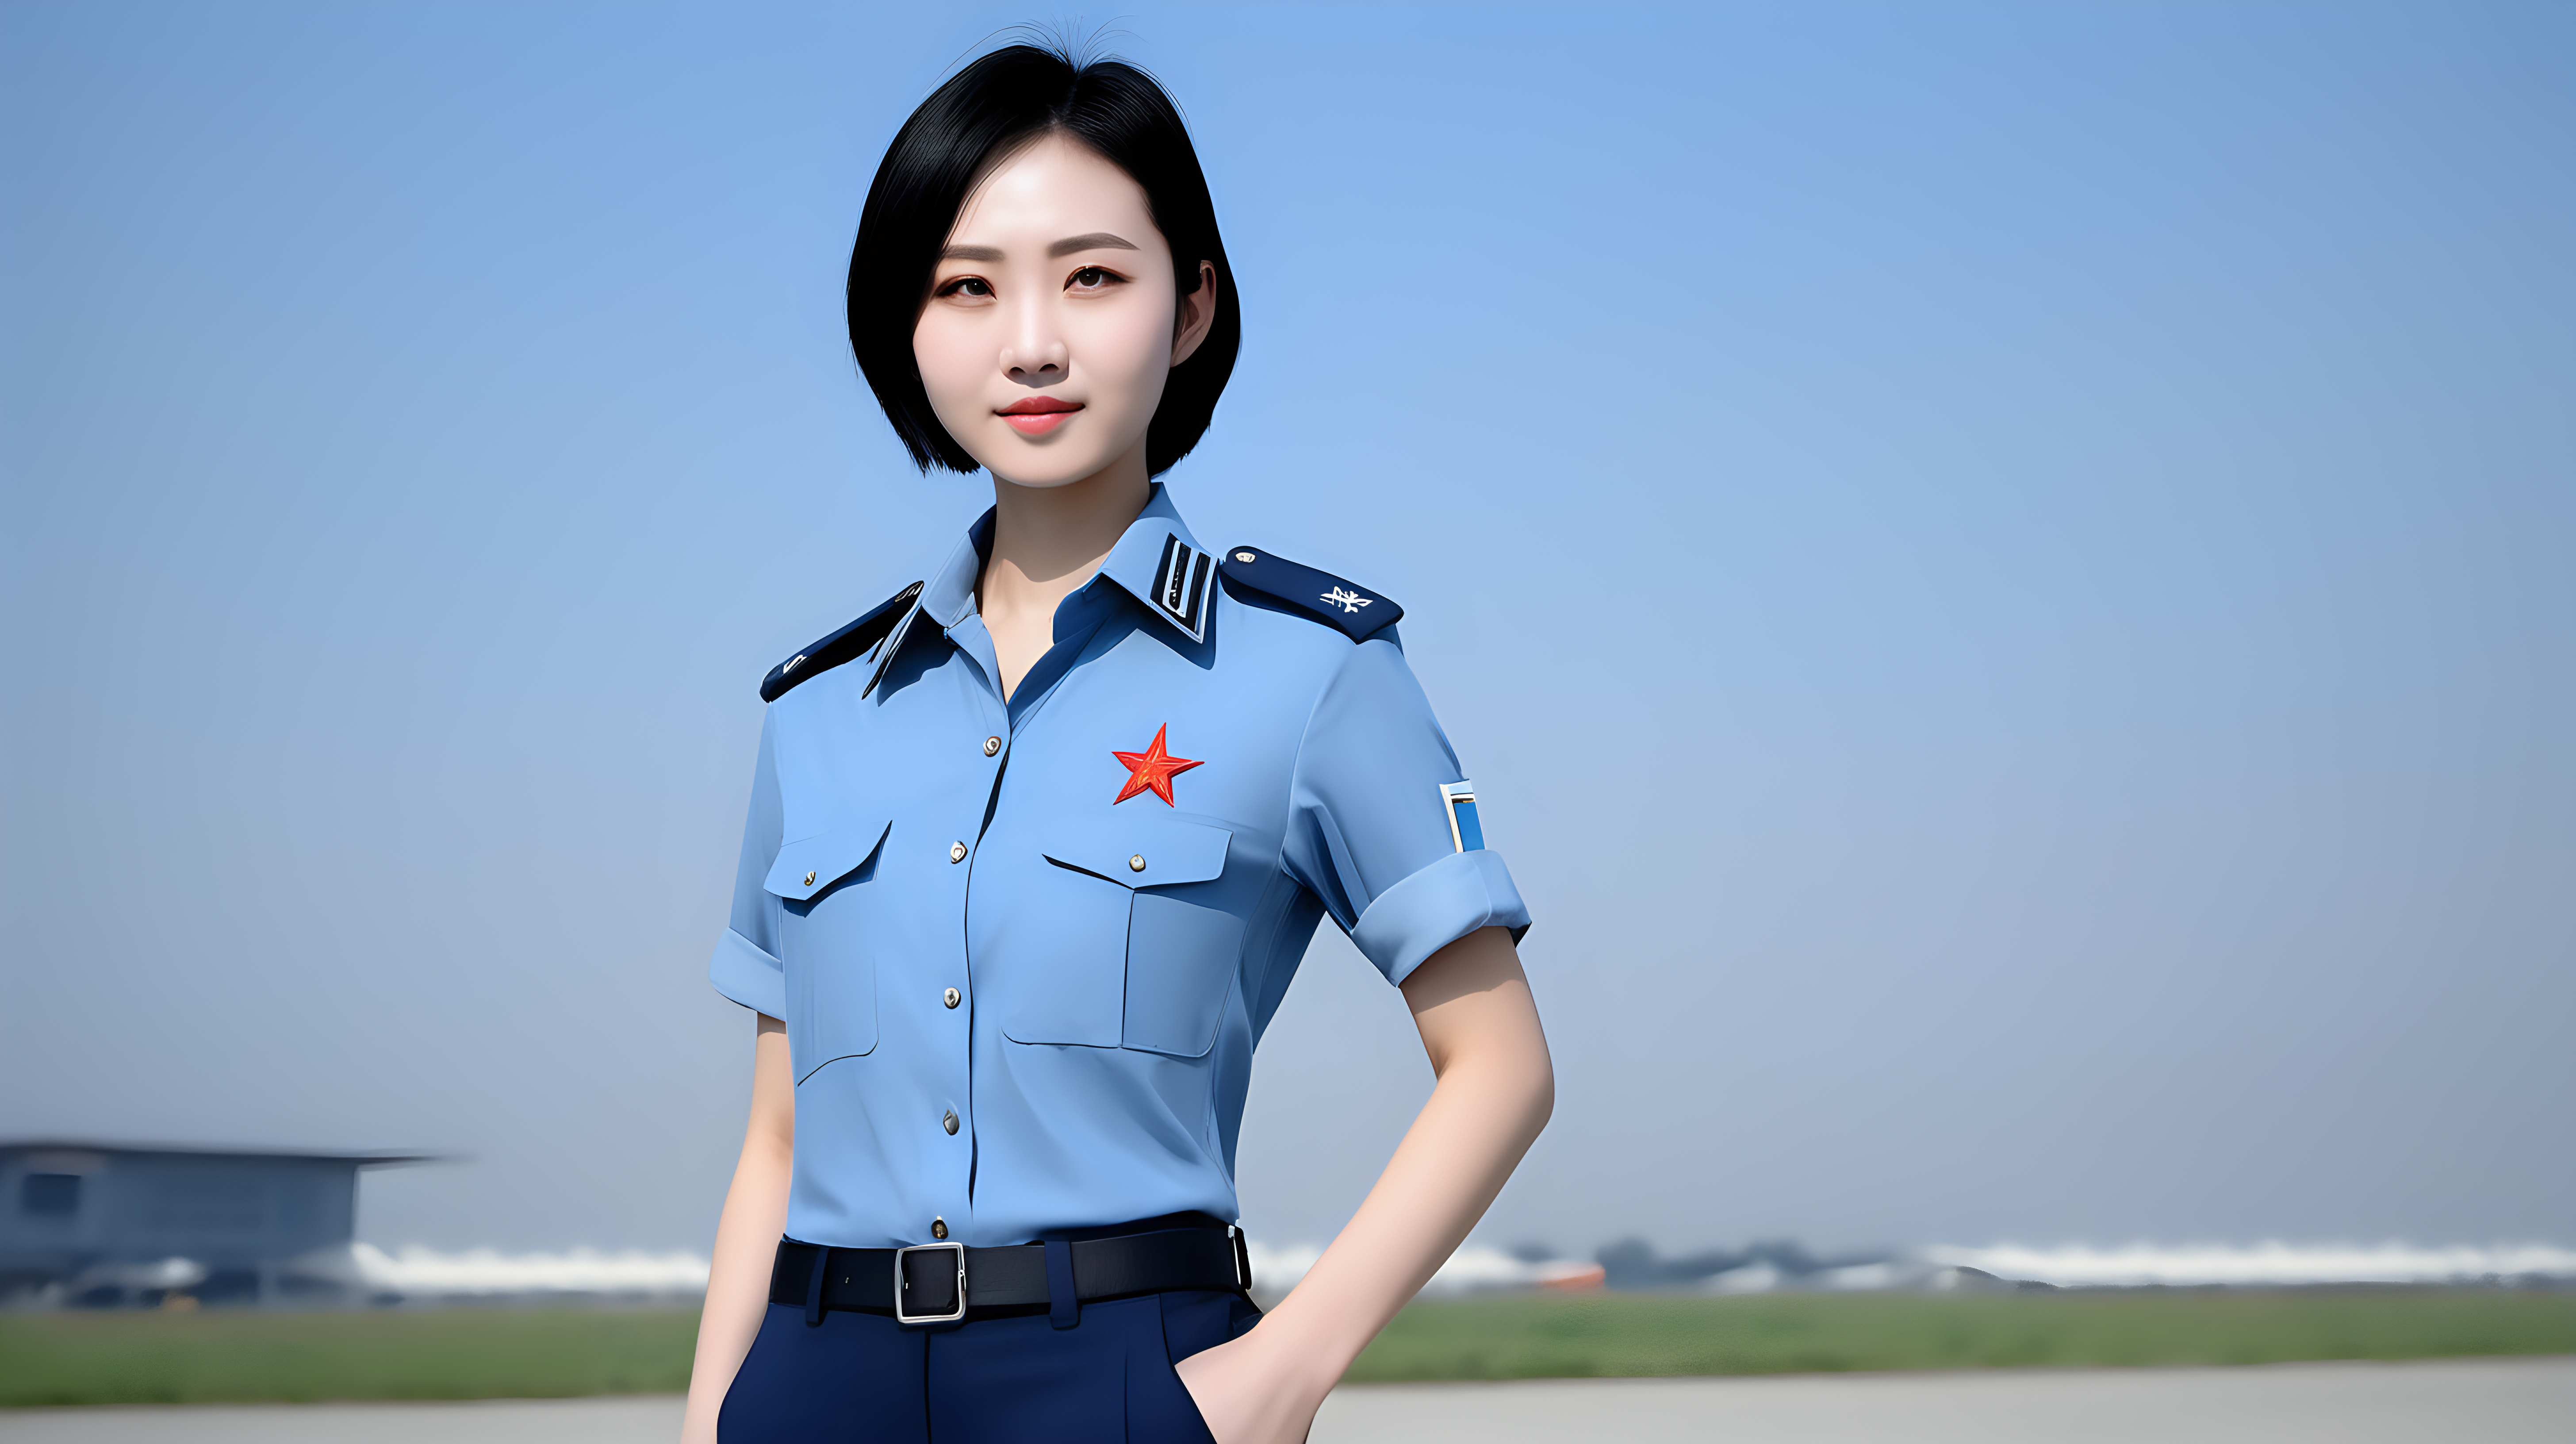 一名中国空军女兵
青年人
短发
黑发
天蓝色衬衫
深蓝色西裤